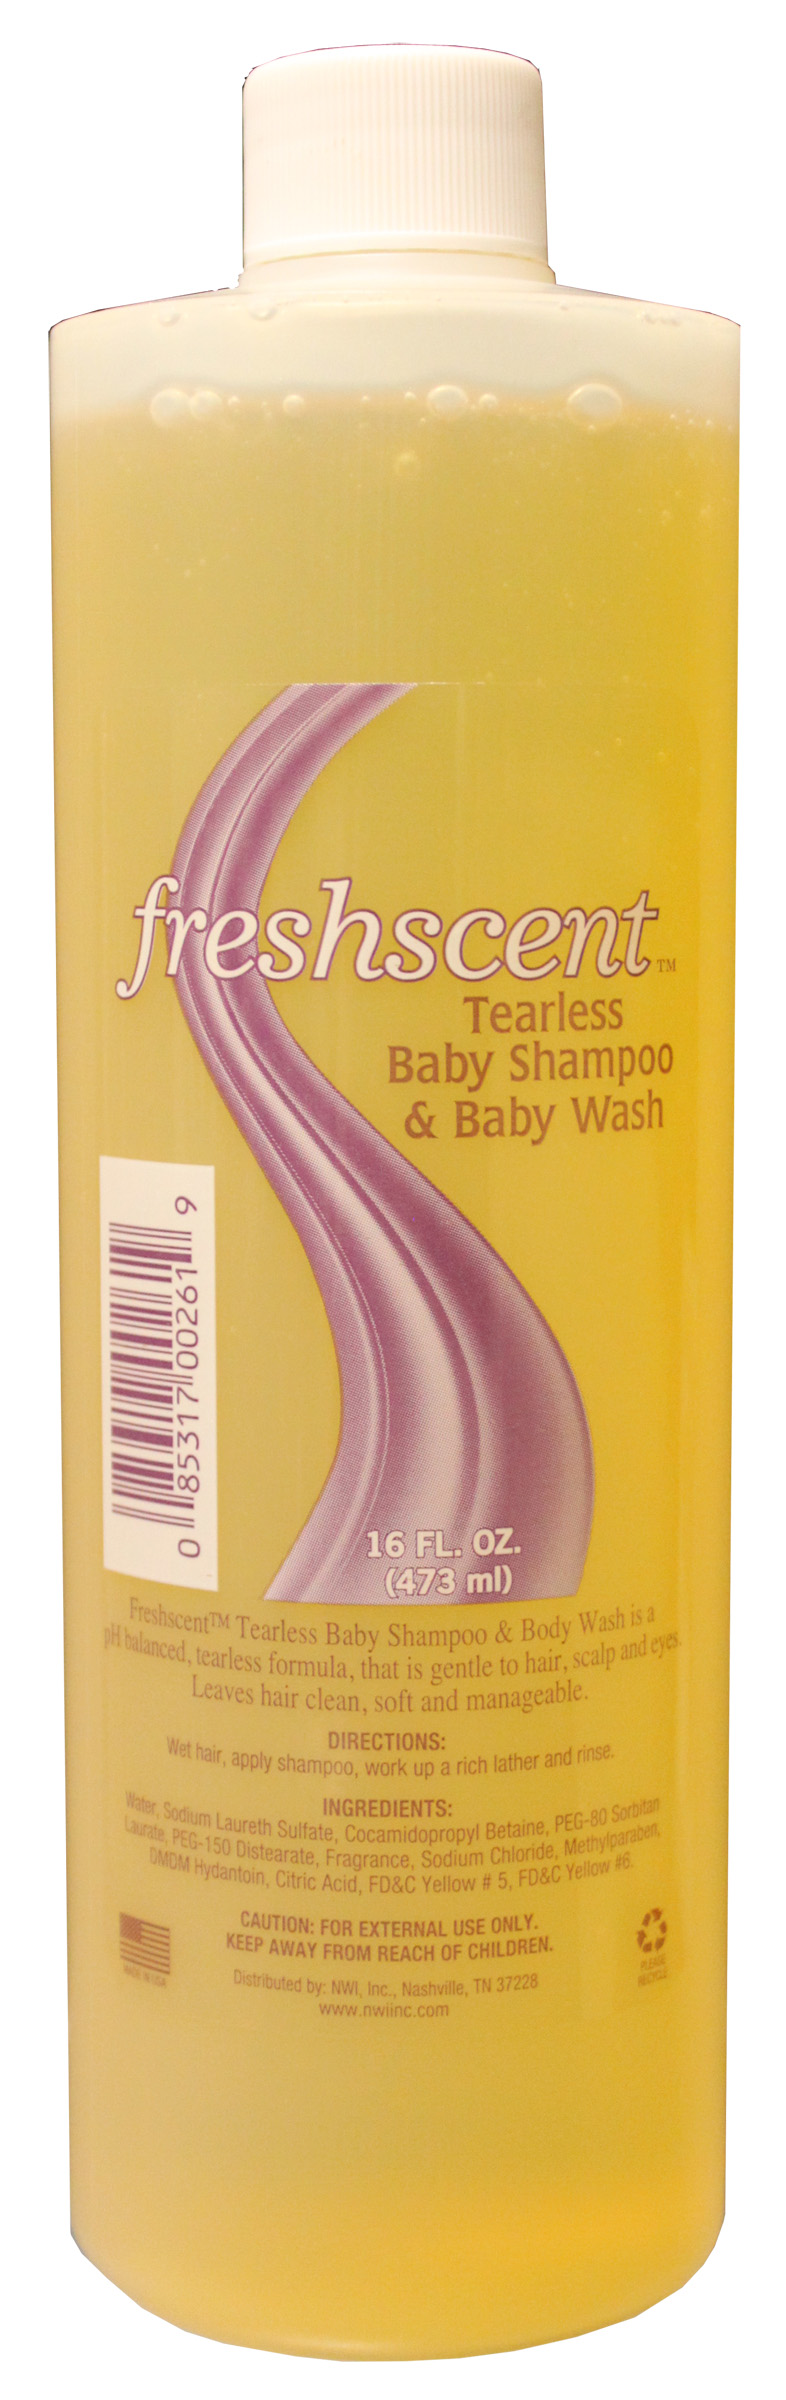 Freshscent 16 oz. Tearless Baby Shampoo & Body Wash